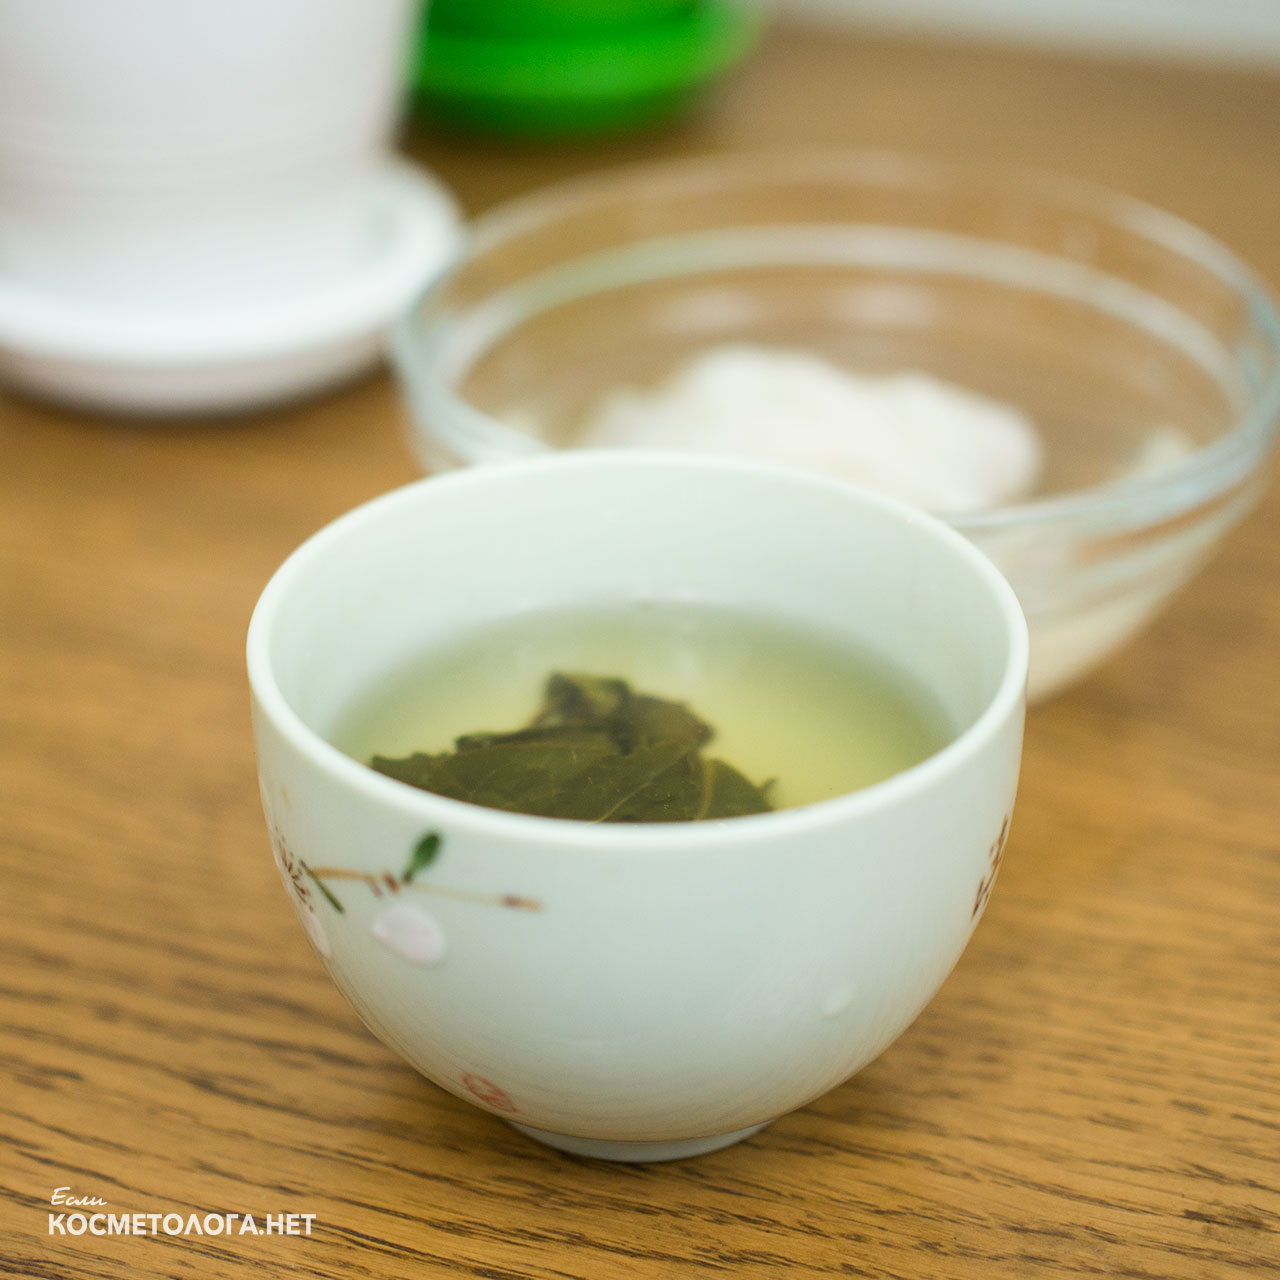 Используйте качественный листовой зелёный чай, чтобы получить от маски хороший эффект